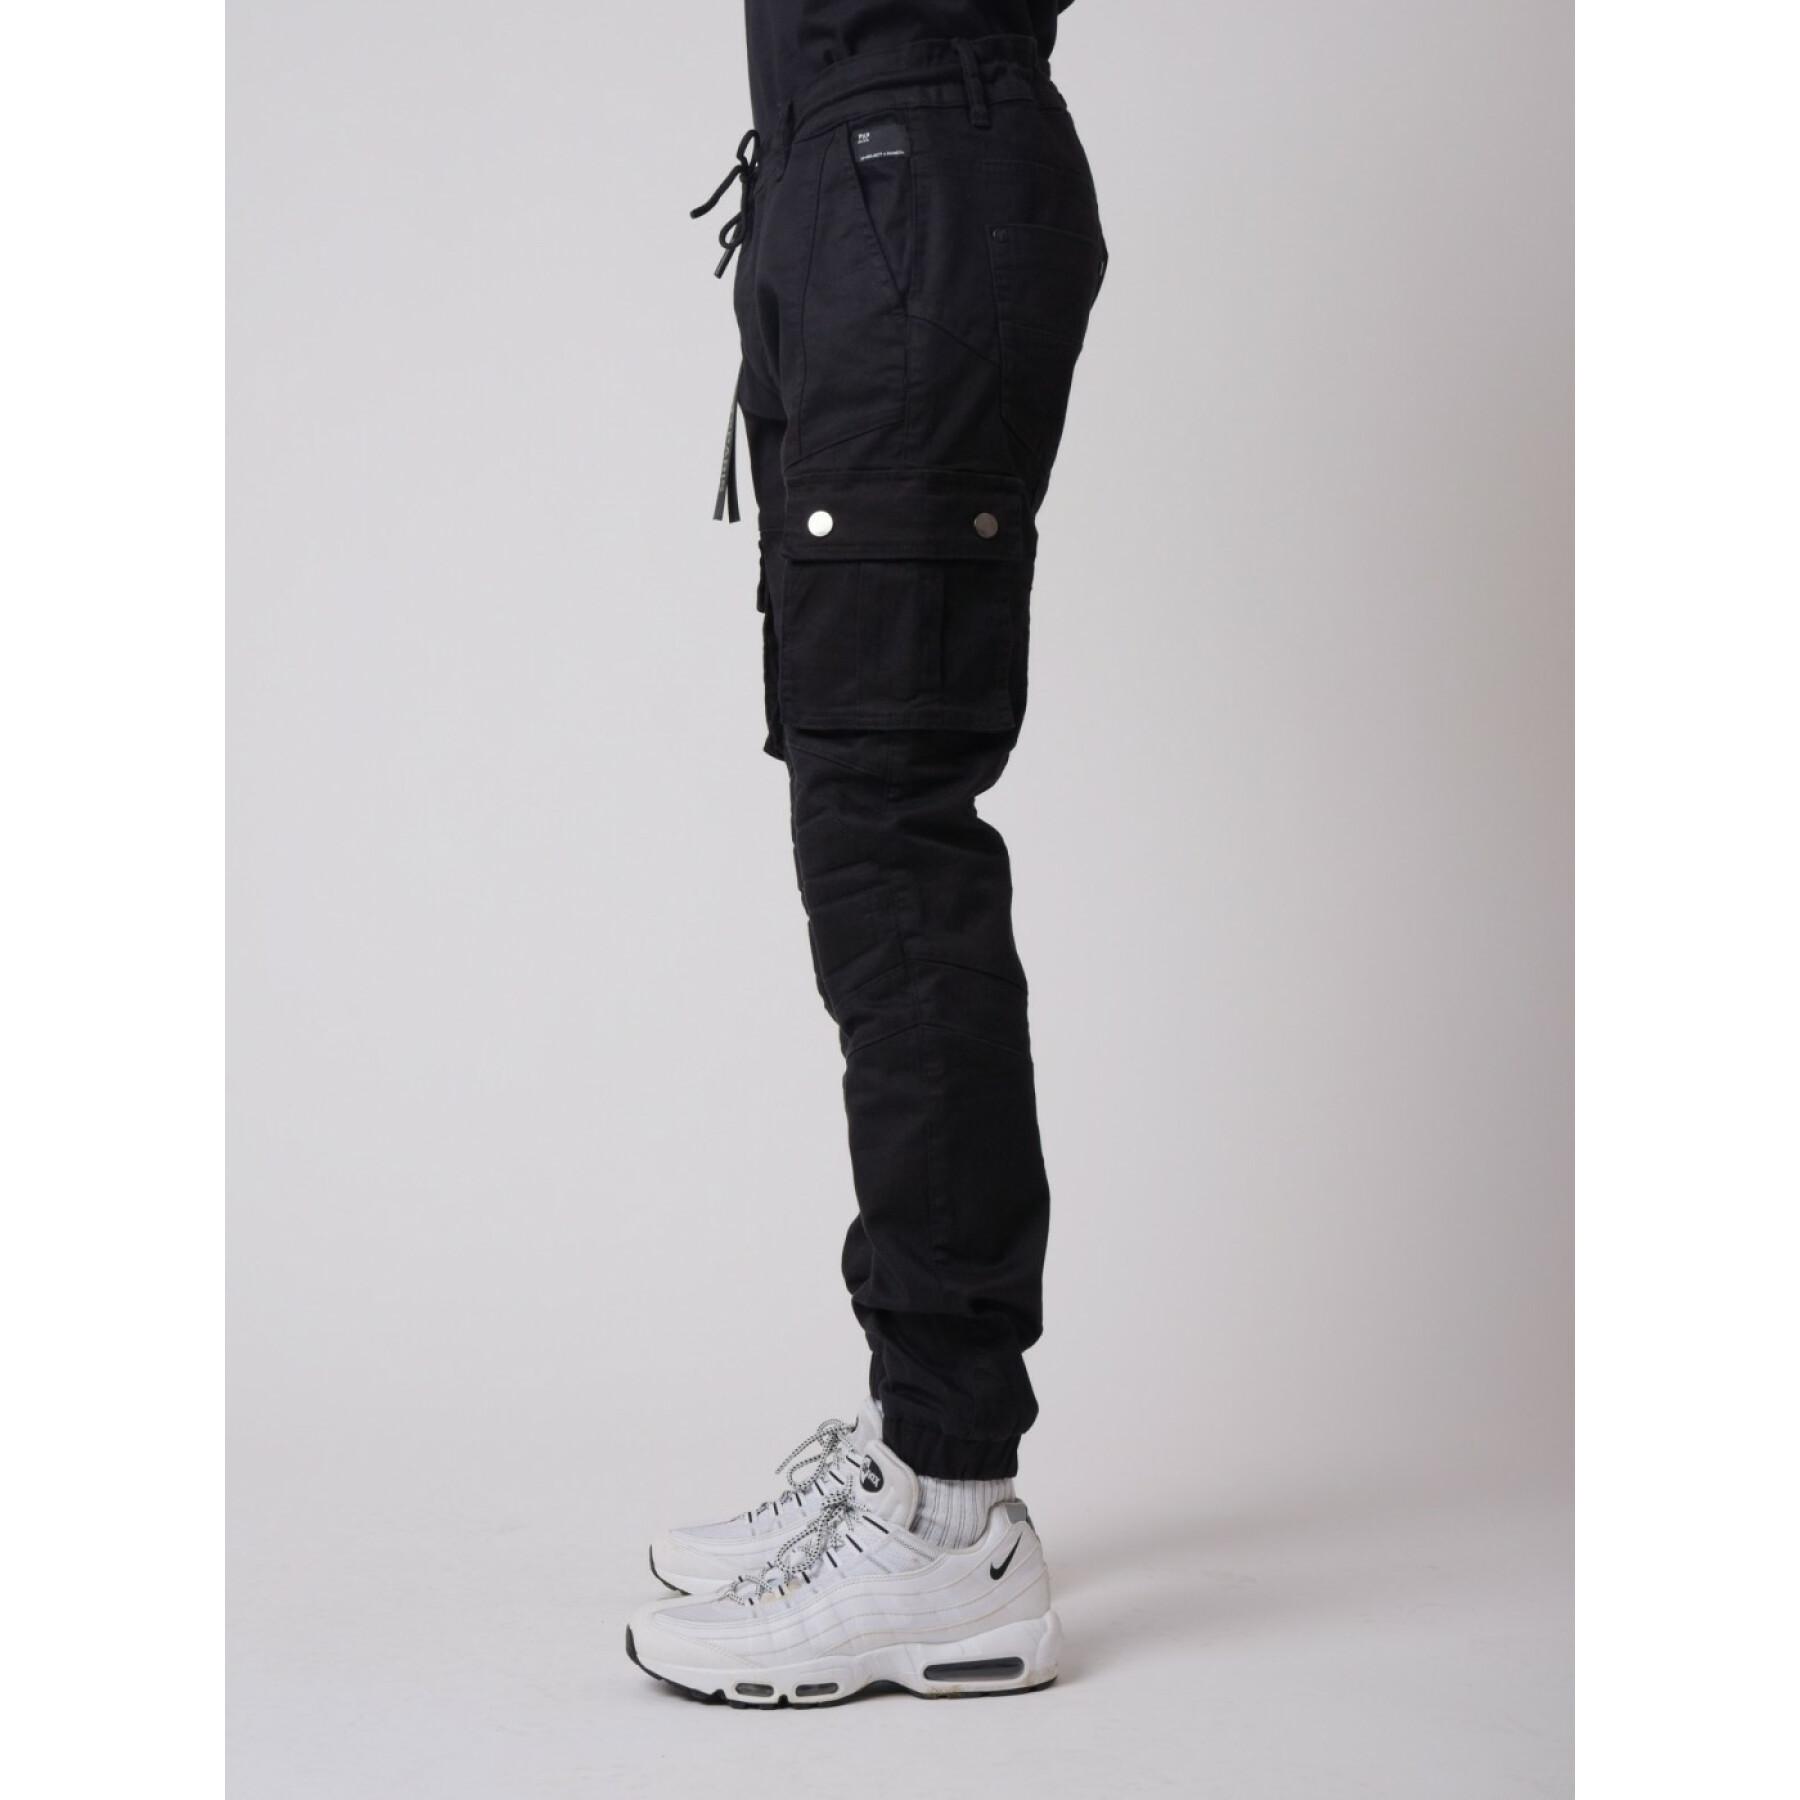 Project x paris - jeans cargo slim fit